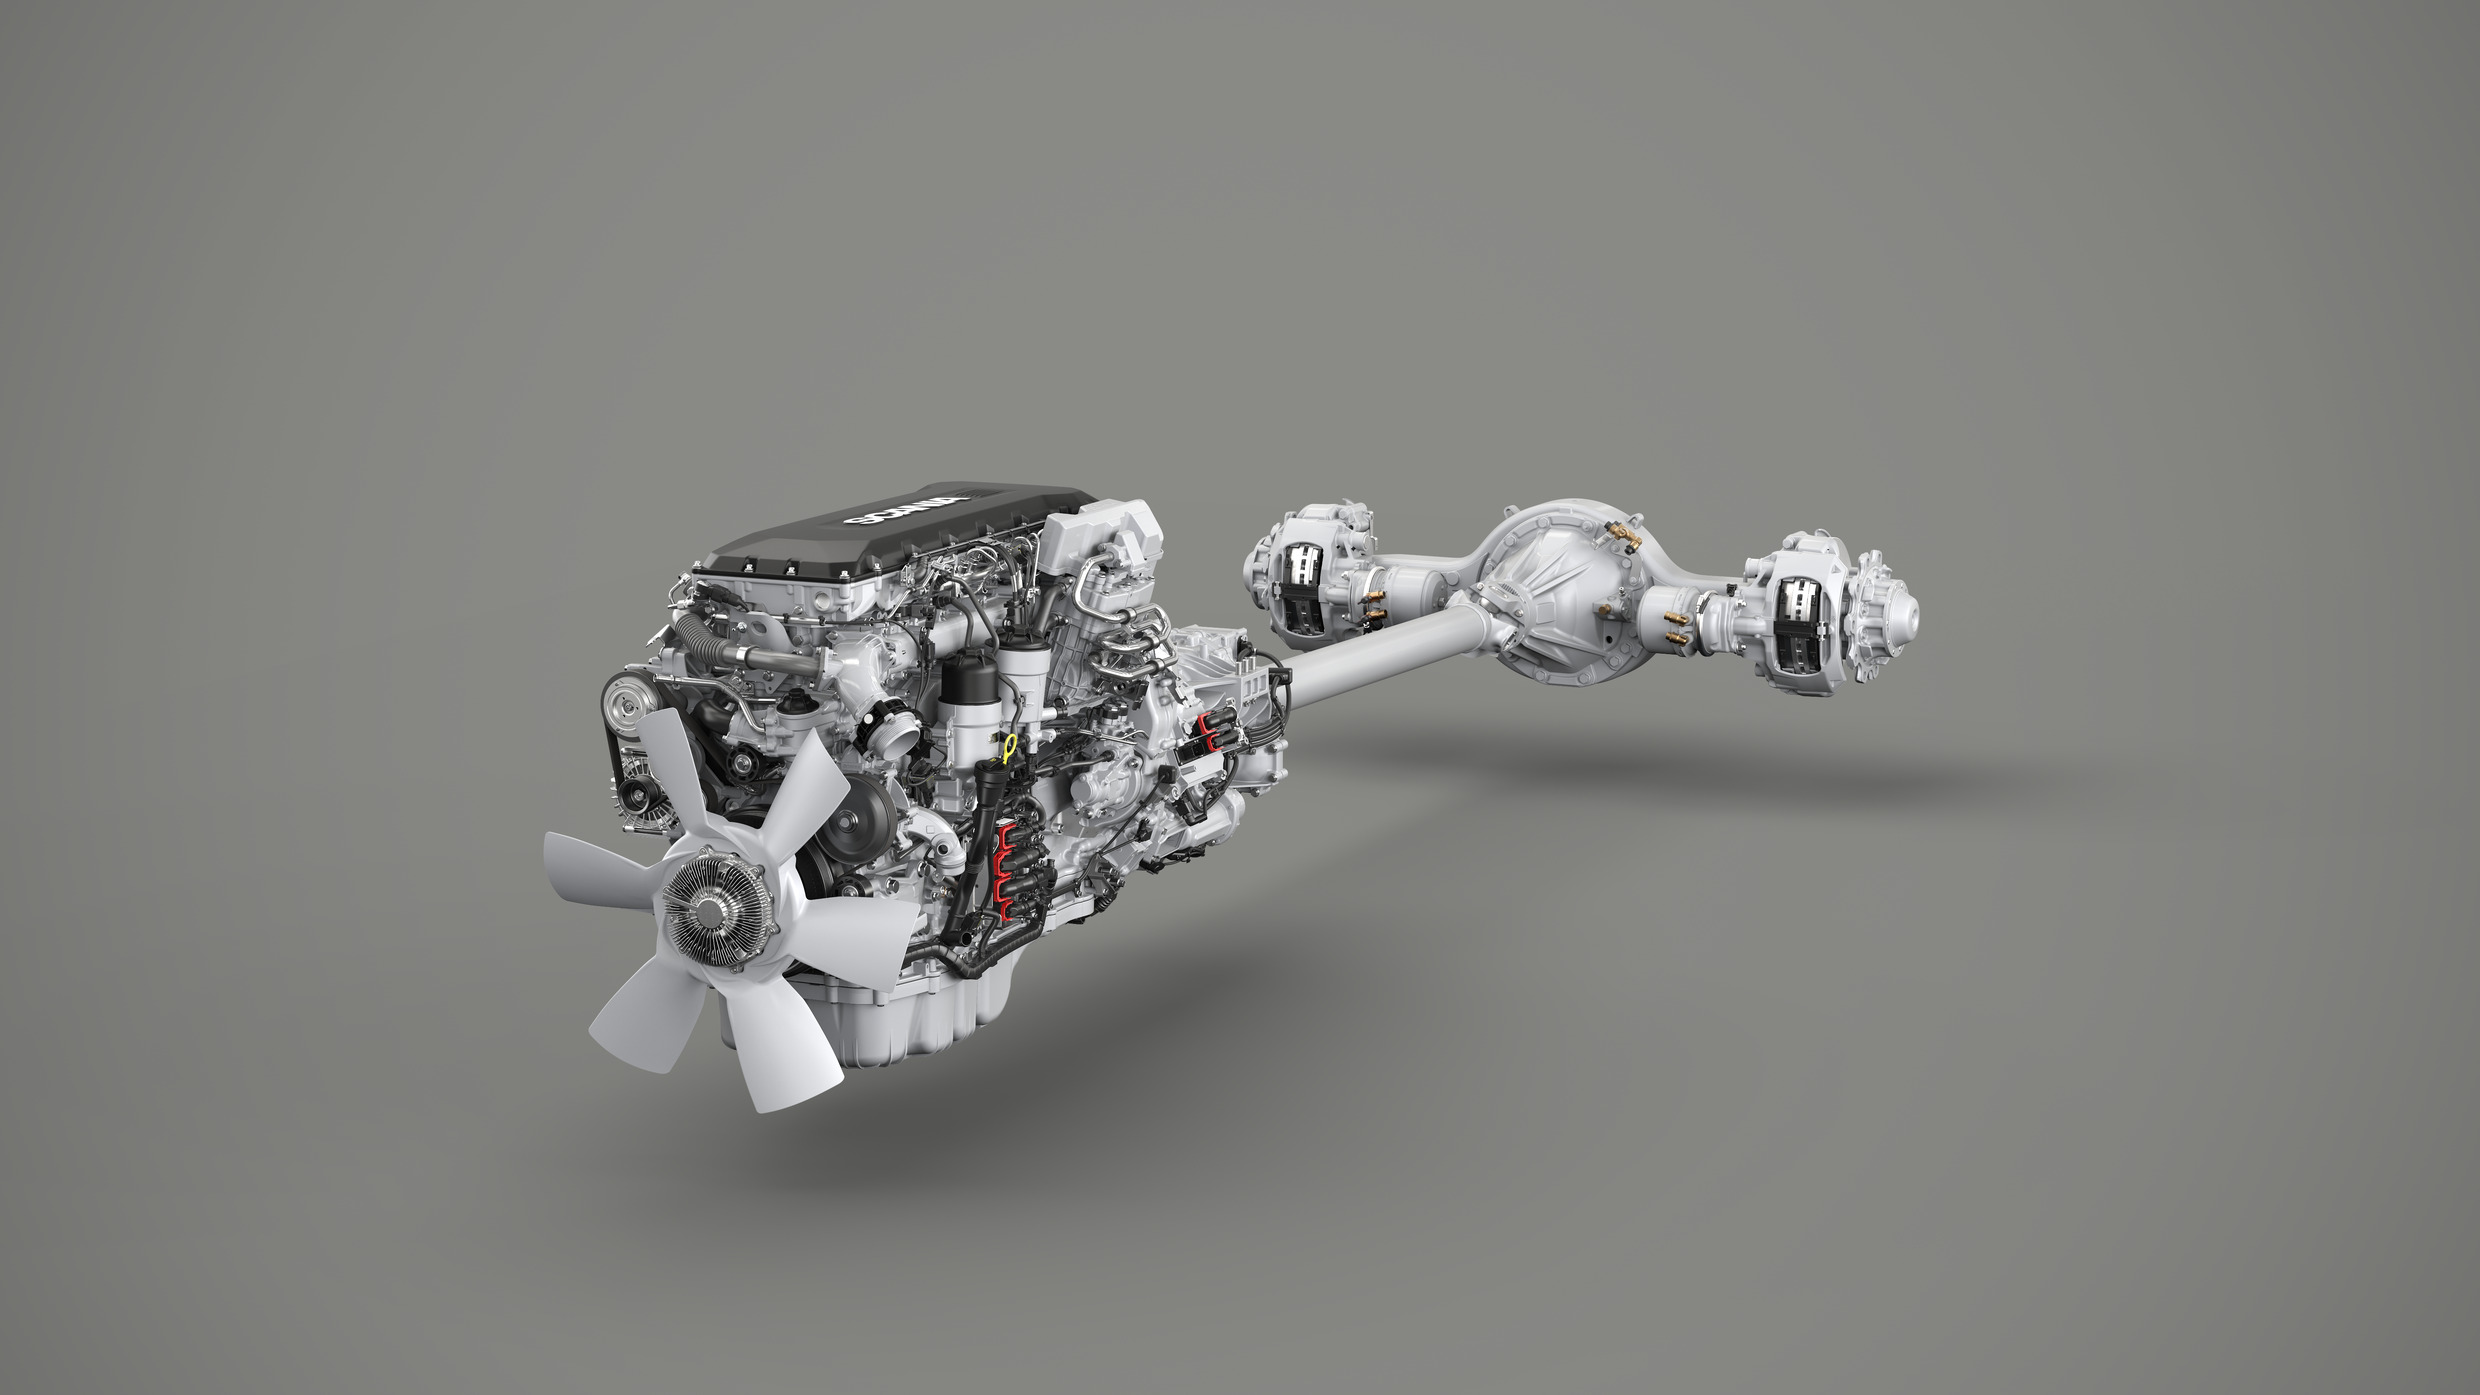 Scania'nın Yeni 13 litrelik Motorunun Başarısı Ödülle Tescillendi